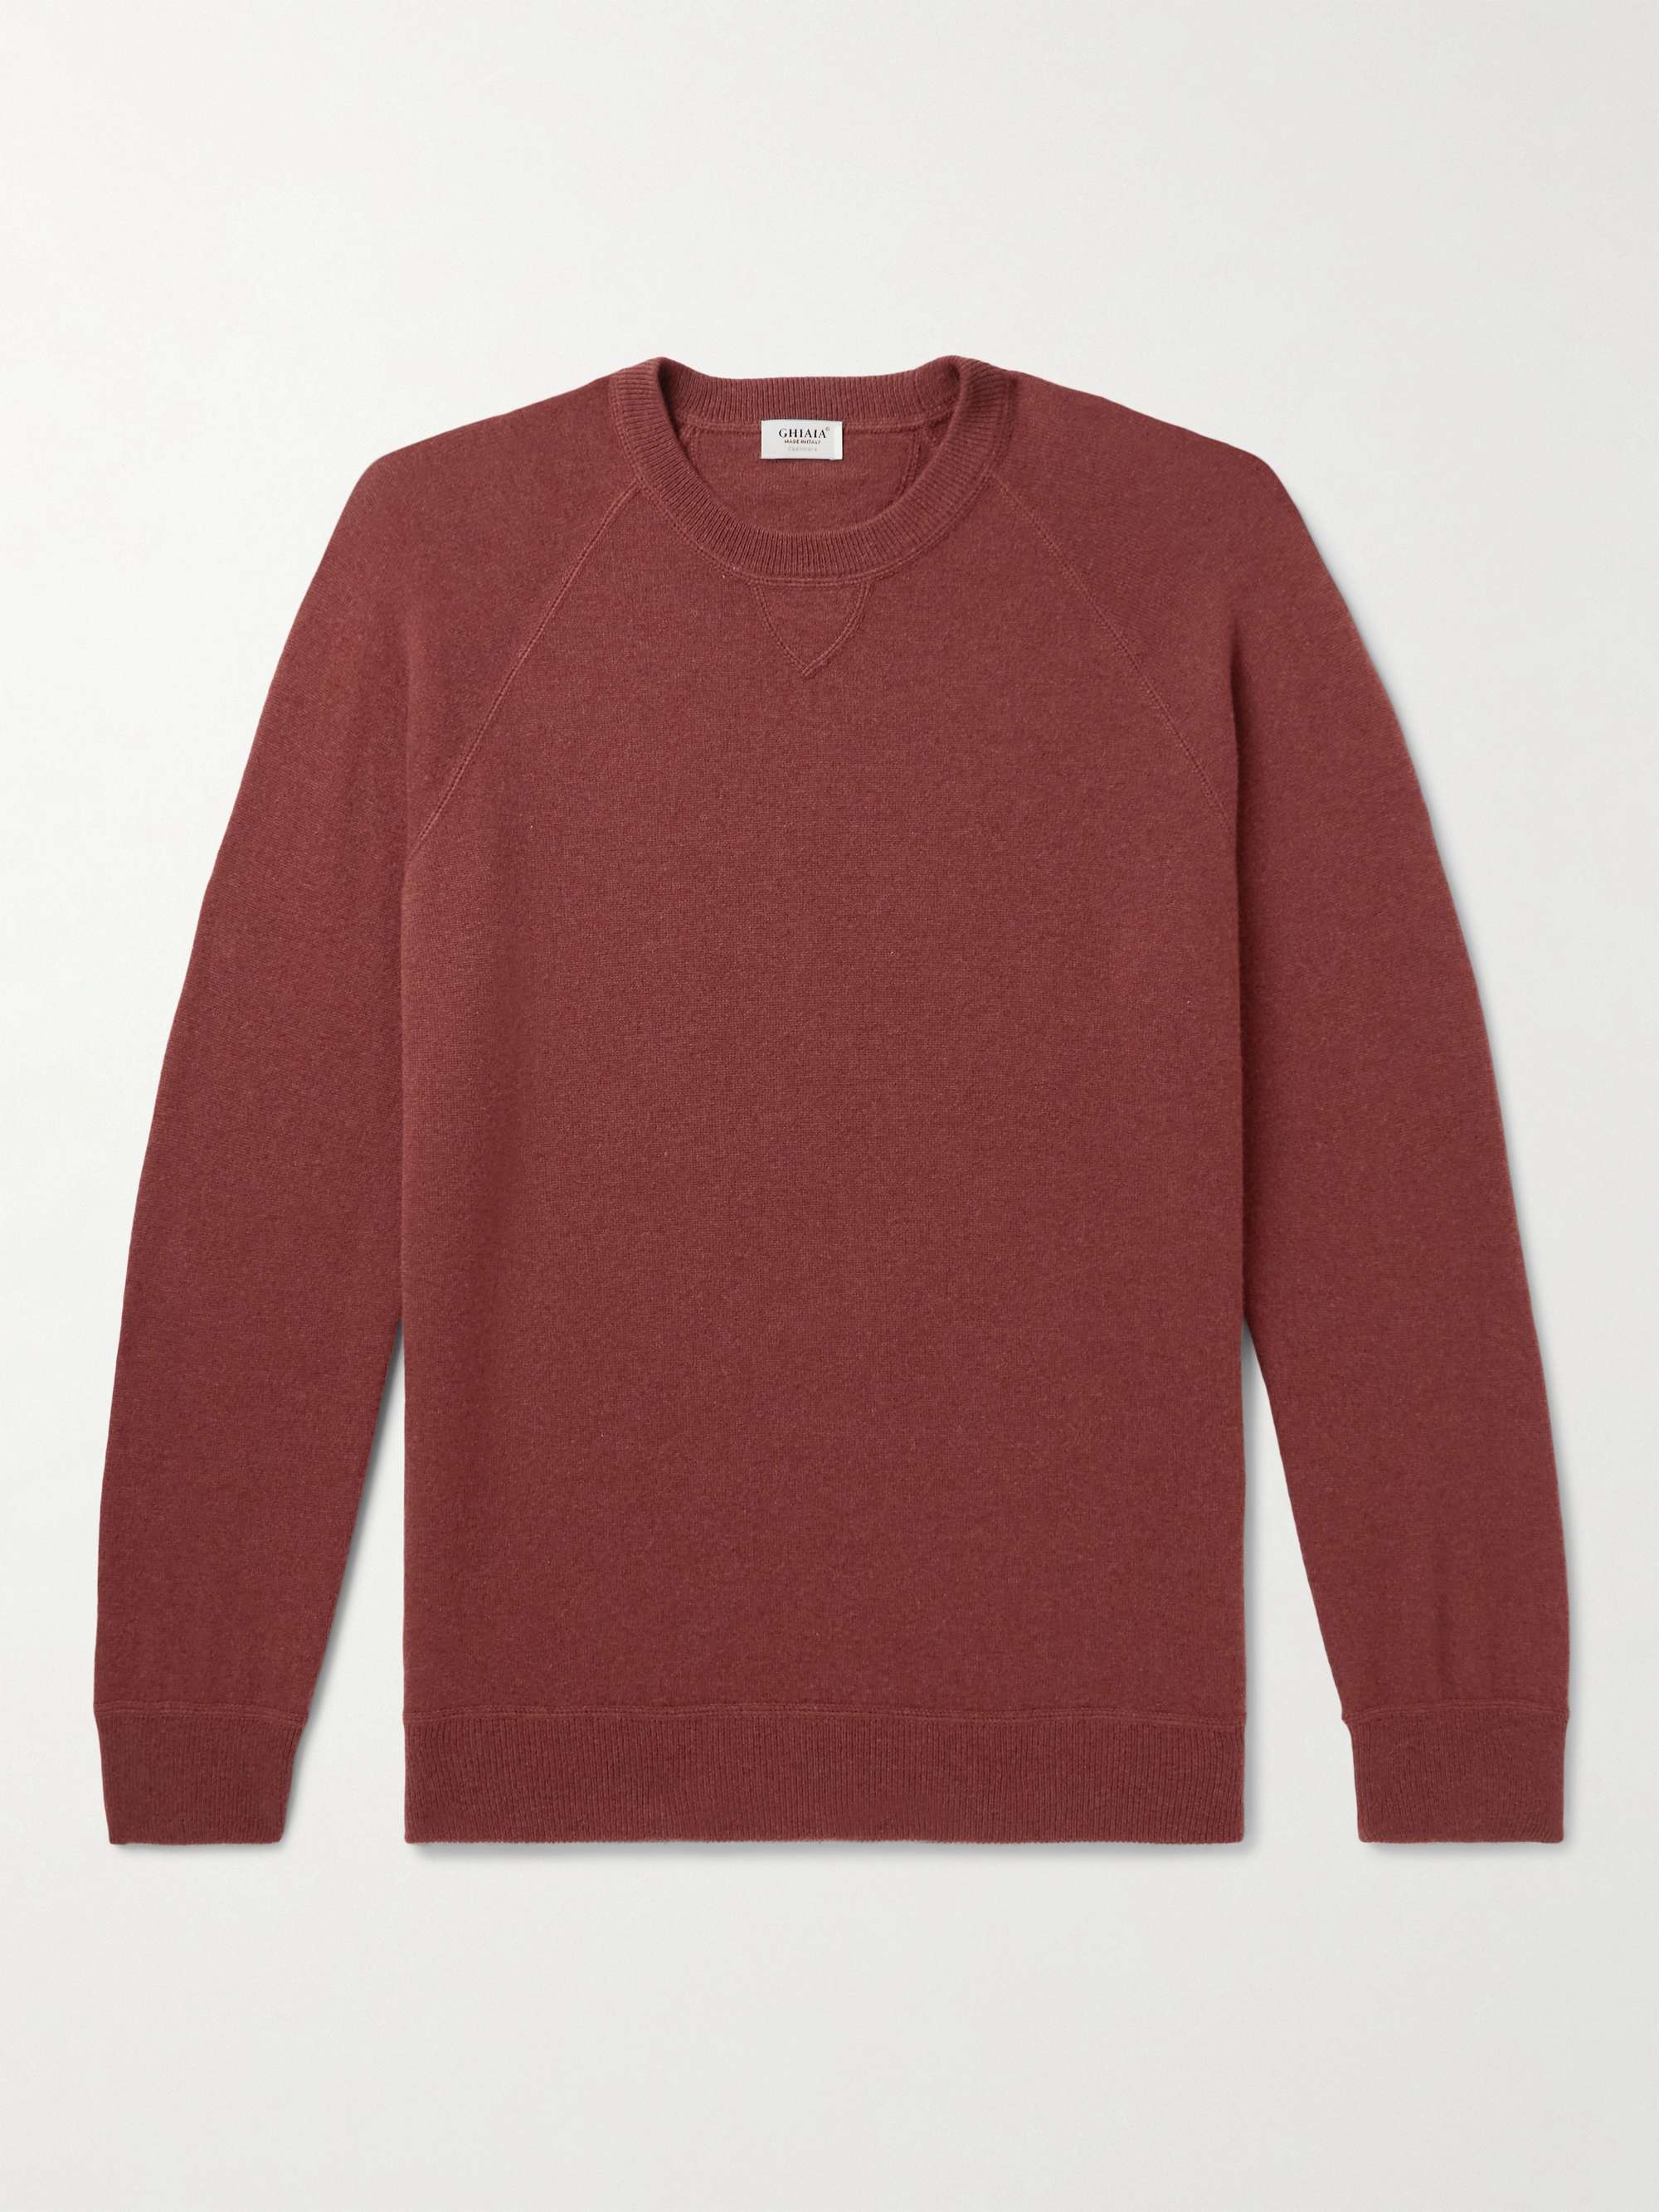 GHIAIA CASHMERE Cashmere Sweater for Men | MR PORTER